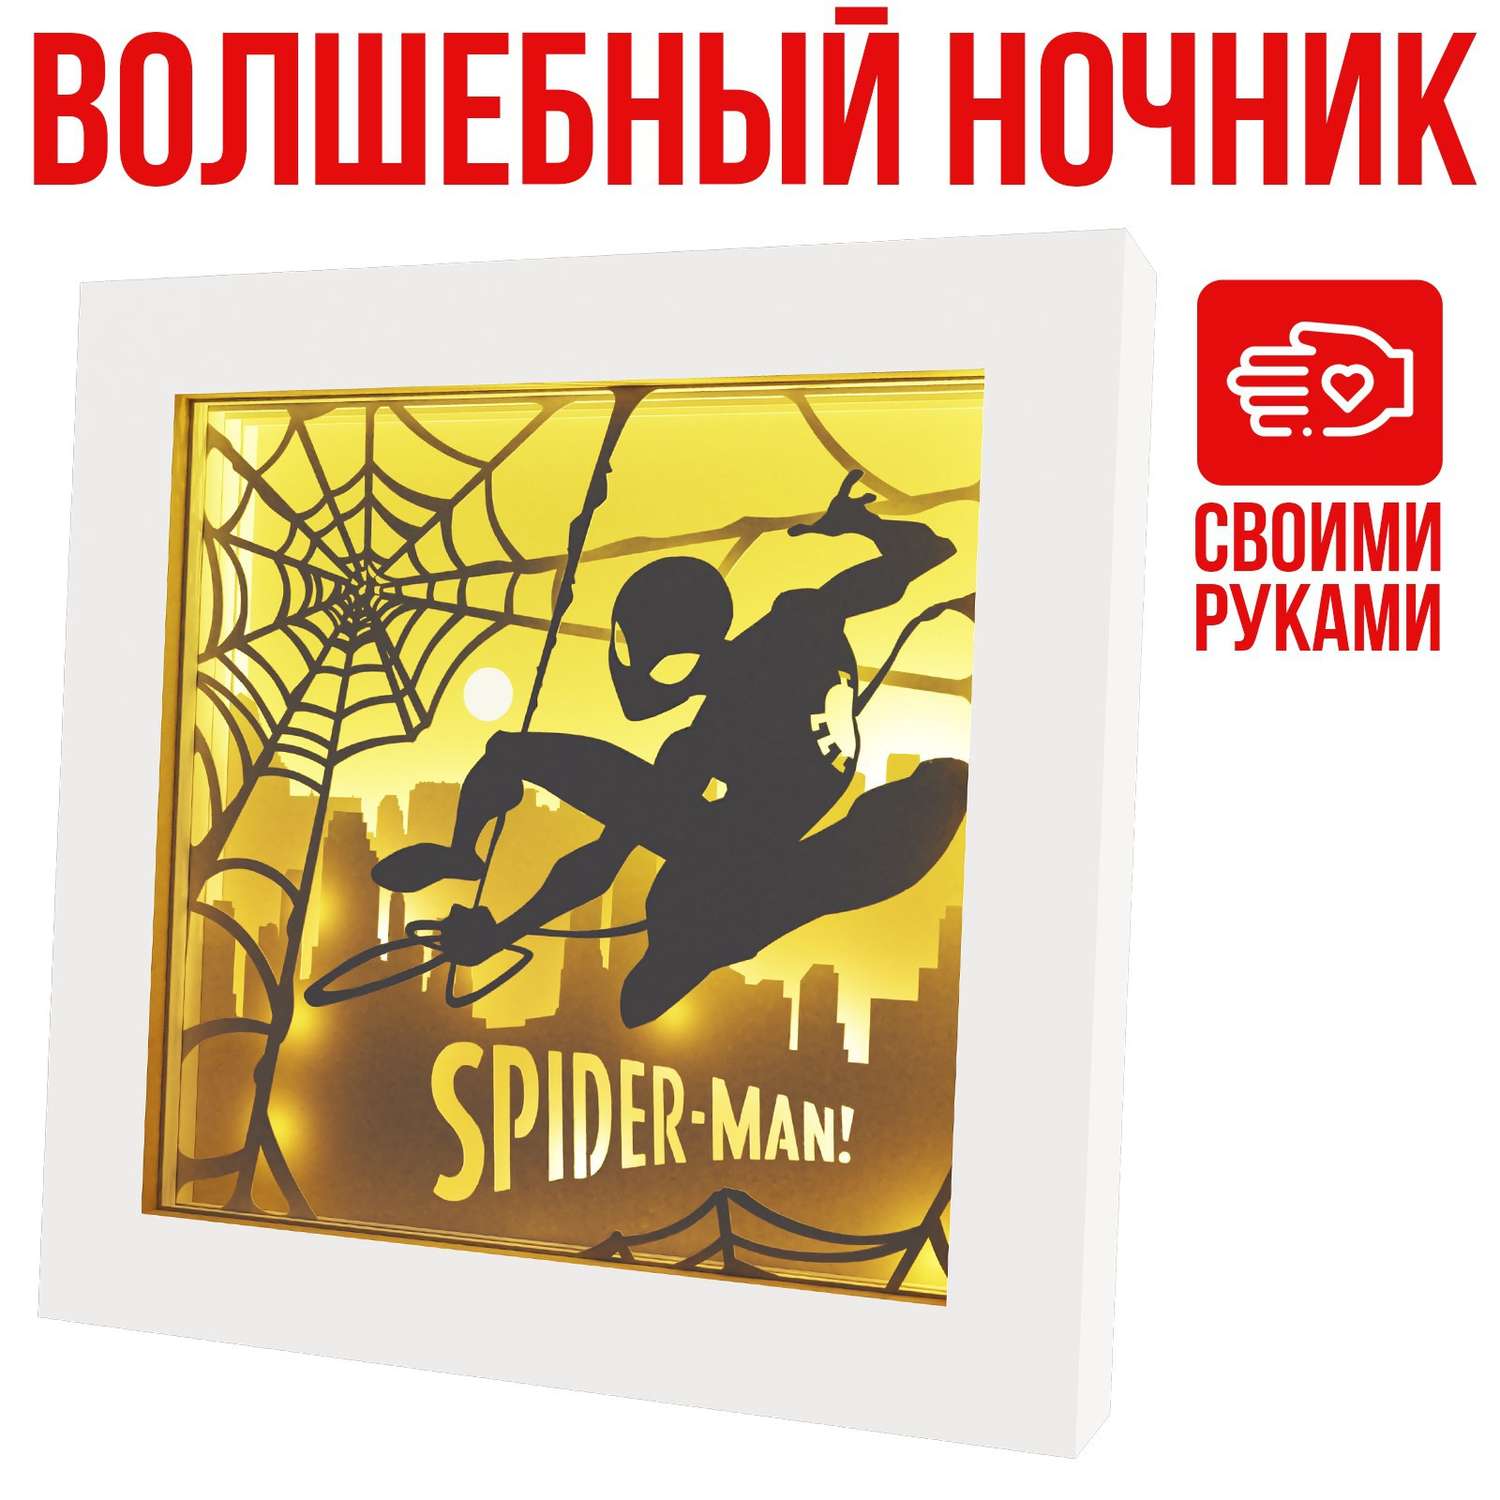 Набор MARVEL для творчества «Многослойный ночник» волшебный. Marvel. Человек паук 7869384 - фото 9